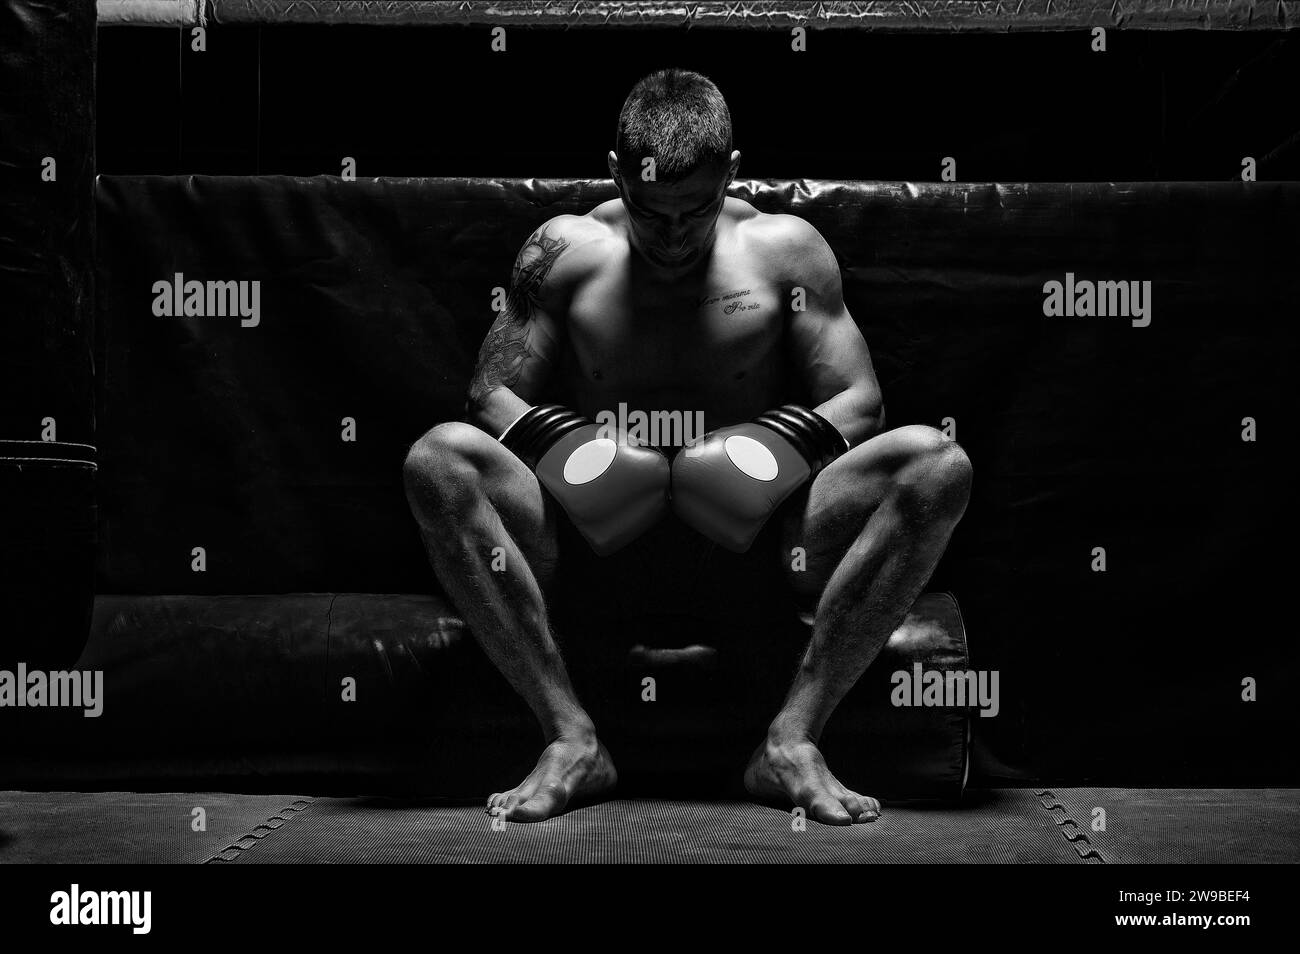 Boxer est assis dans des gants près du ring avec sa tête inclinée. Le concept de sport, boxe, arts martiaux mixtes, Paris sportifs. Supports mixtes Banque D'Images